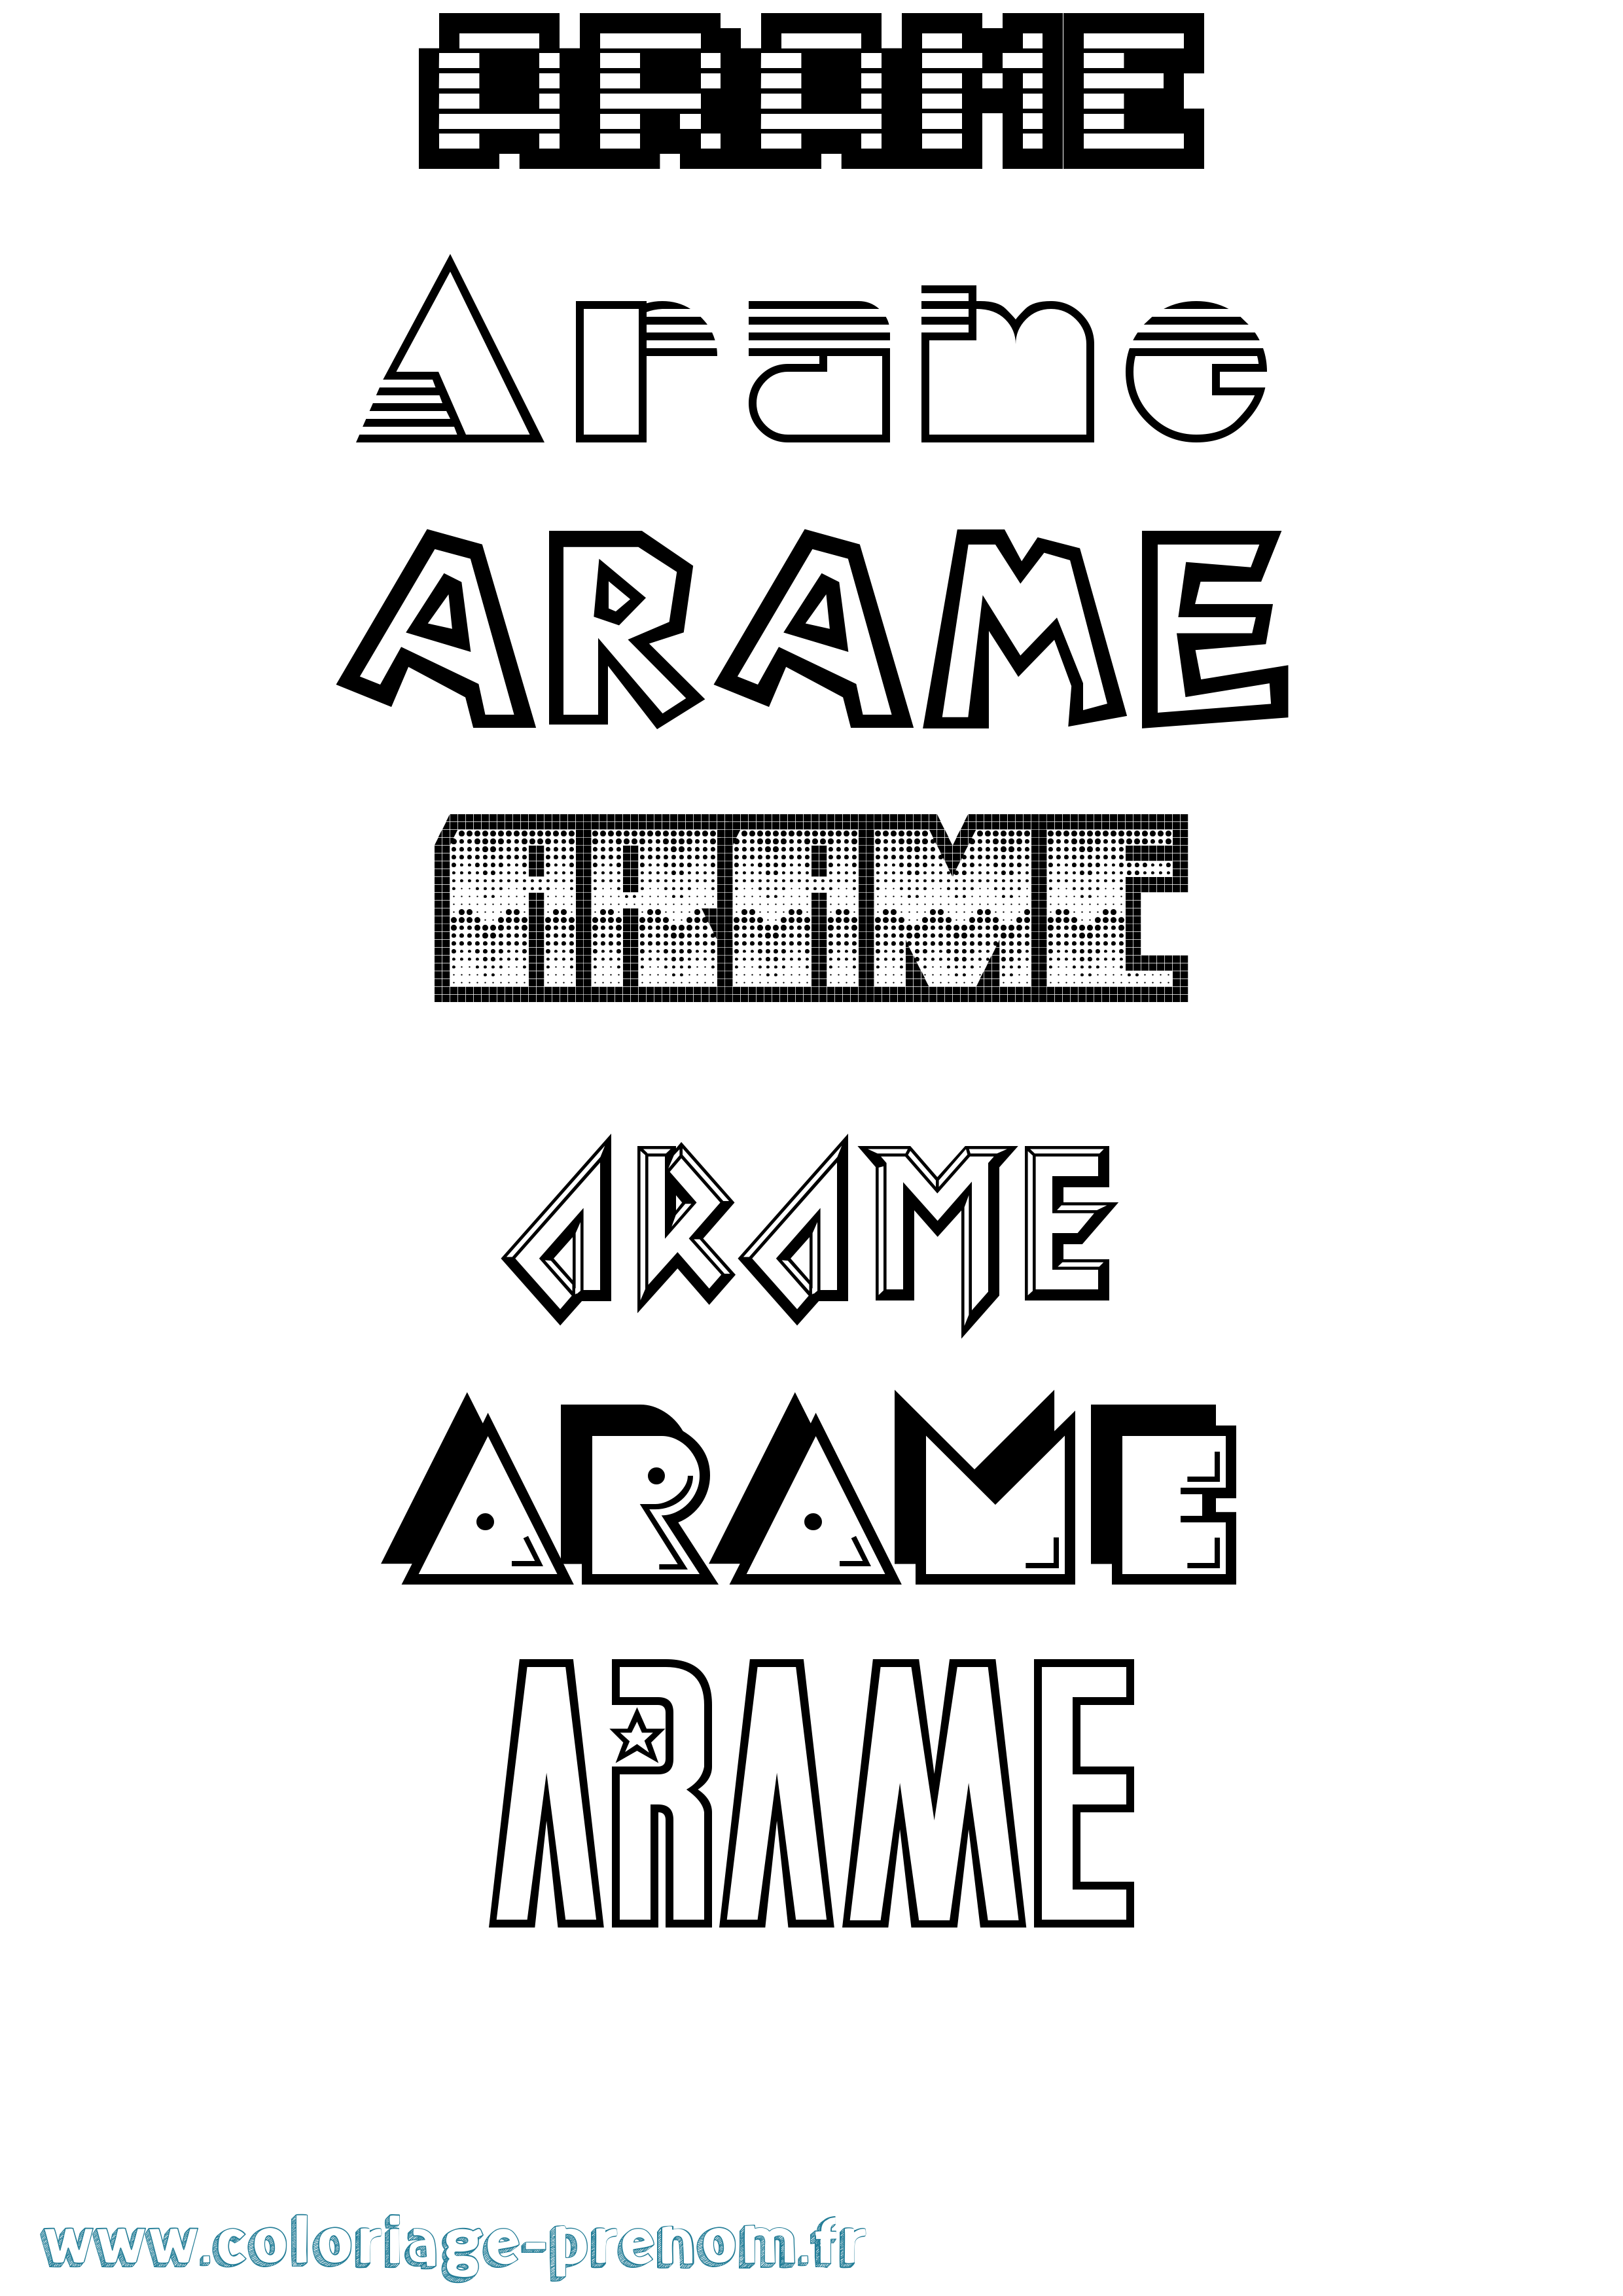 Coloriage prénom Arame Jeux Vidéos